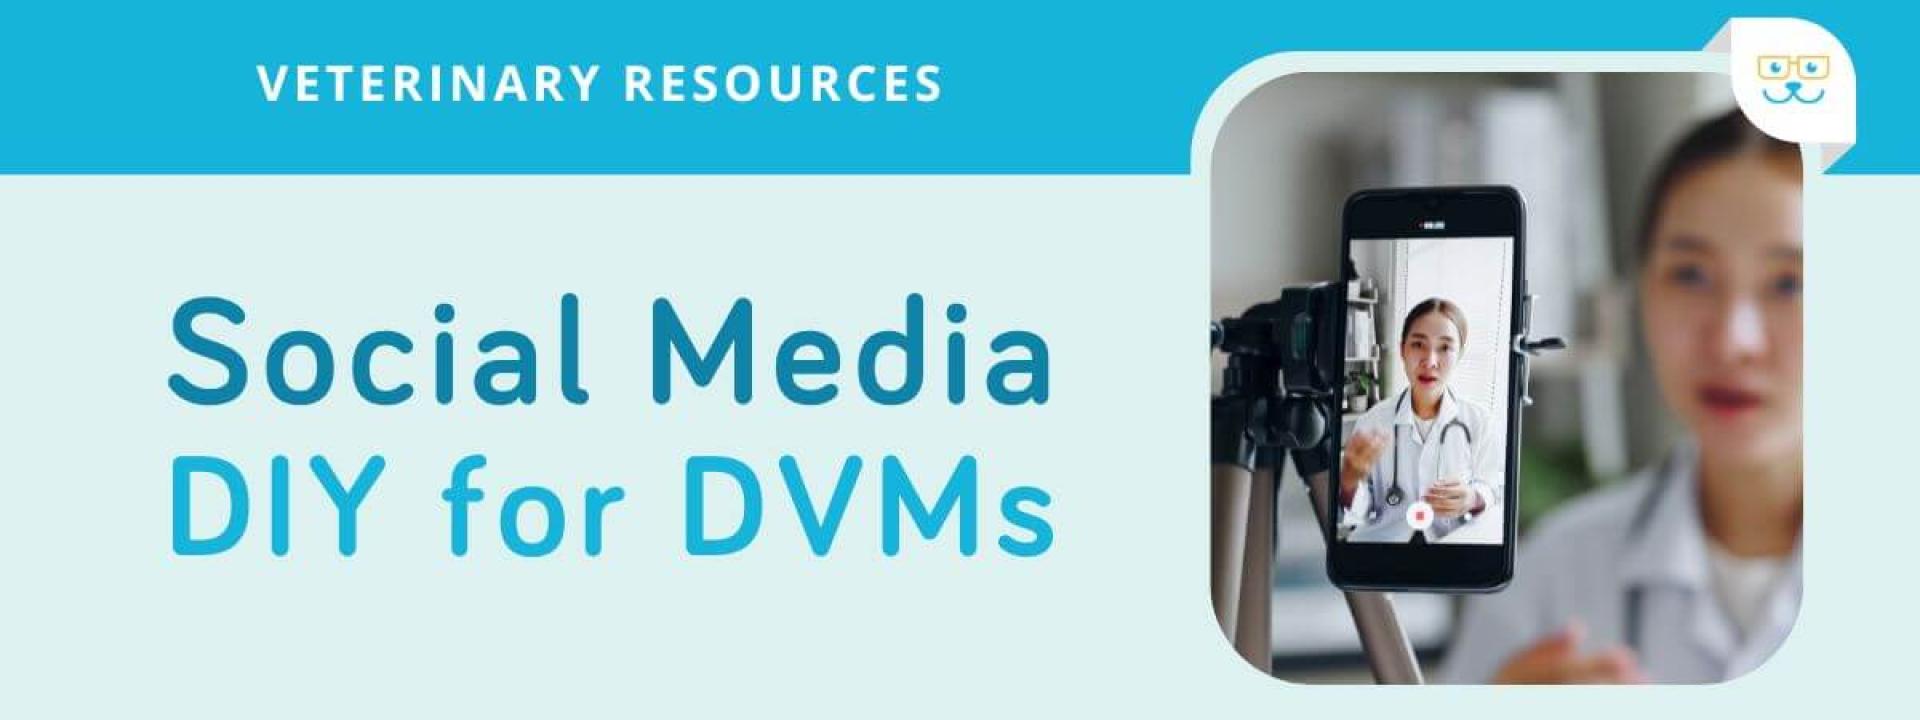 Social Media - DIY for DVMs